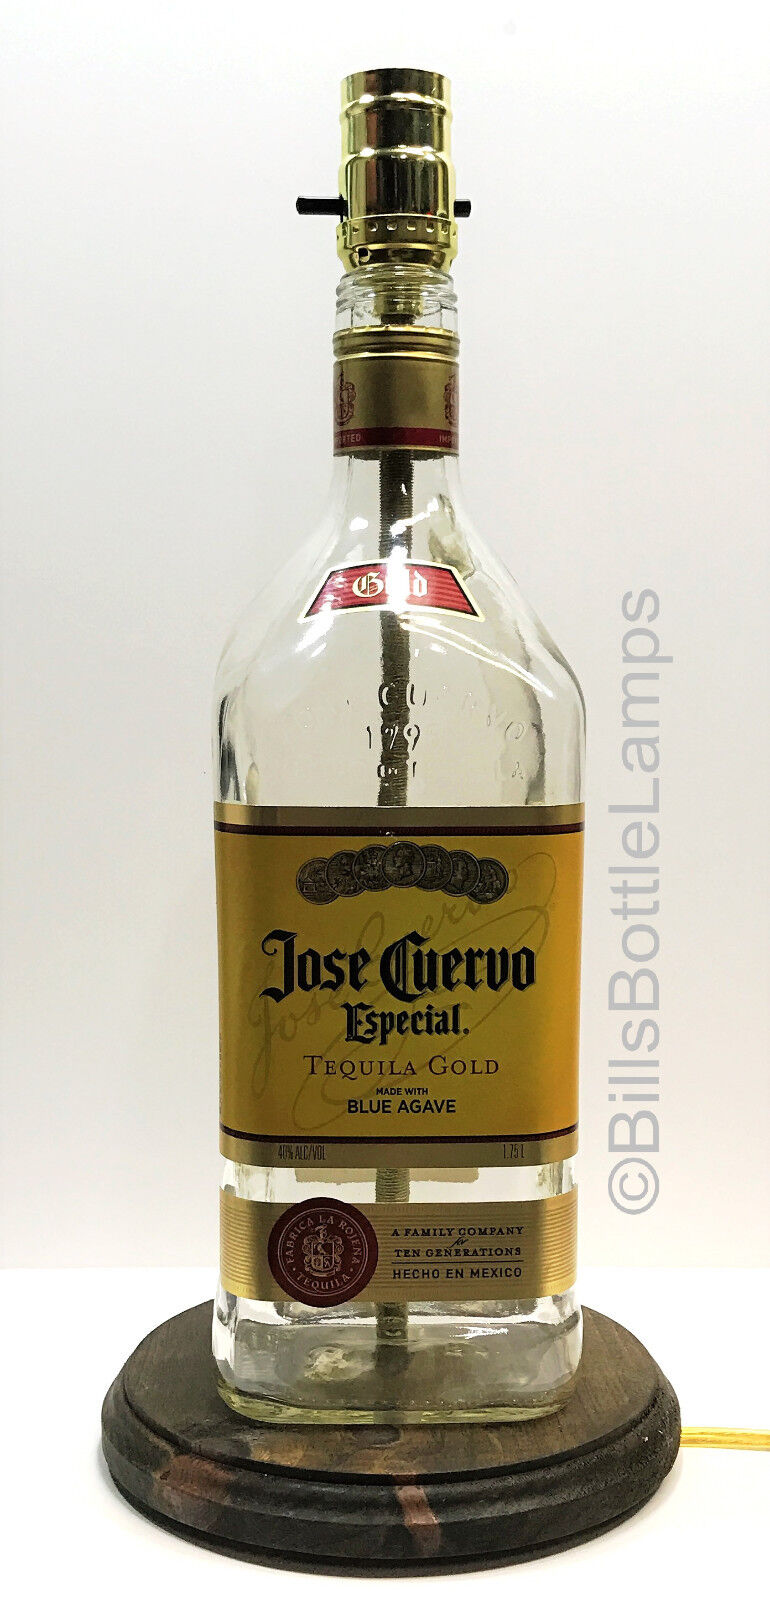 JOSE CUERVO ESPECIAL GOLD Large 1.75L Liquor Bottle TABLE LAMP Light & Wood Base BillsBottleLamps.com